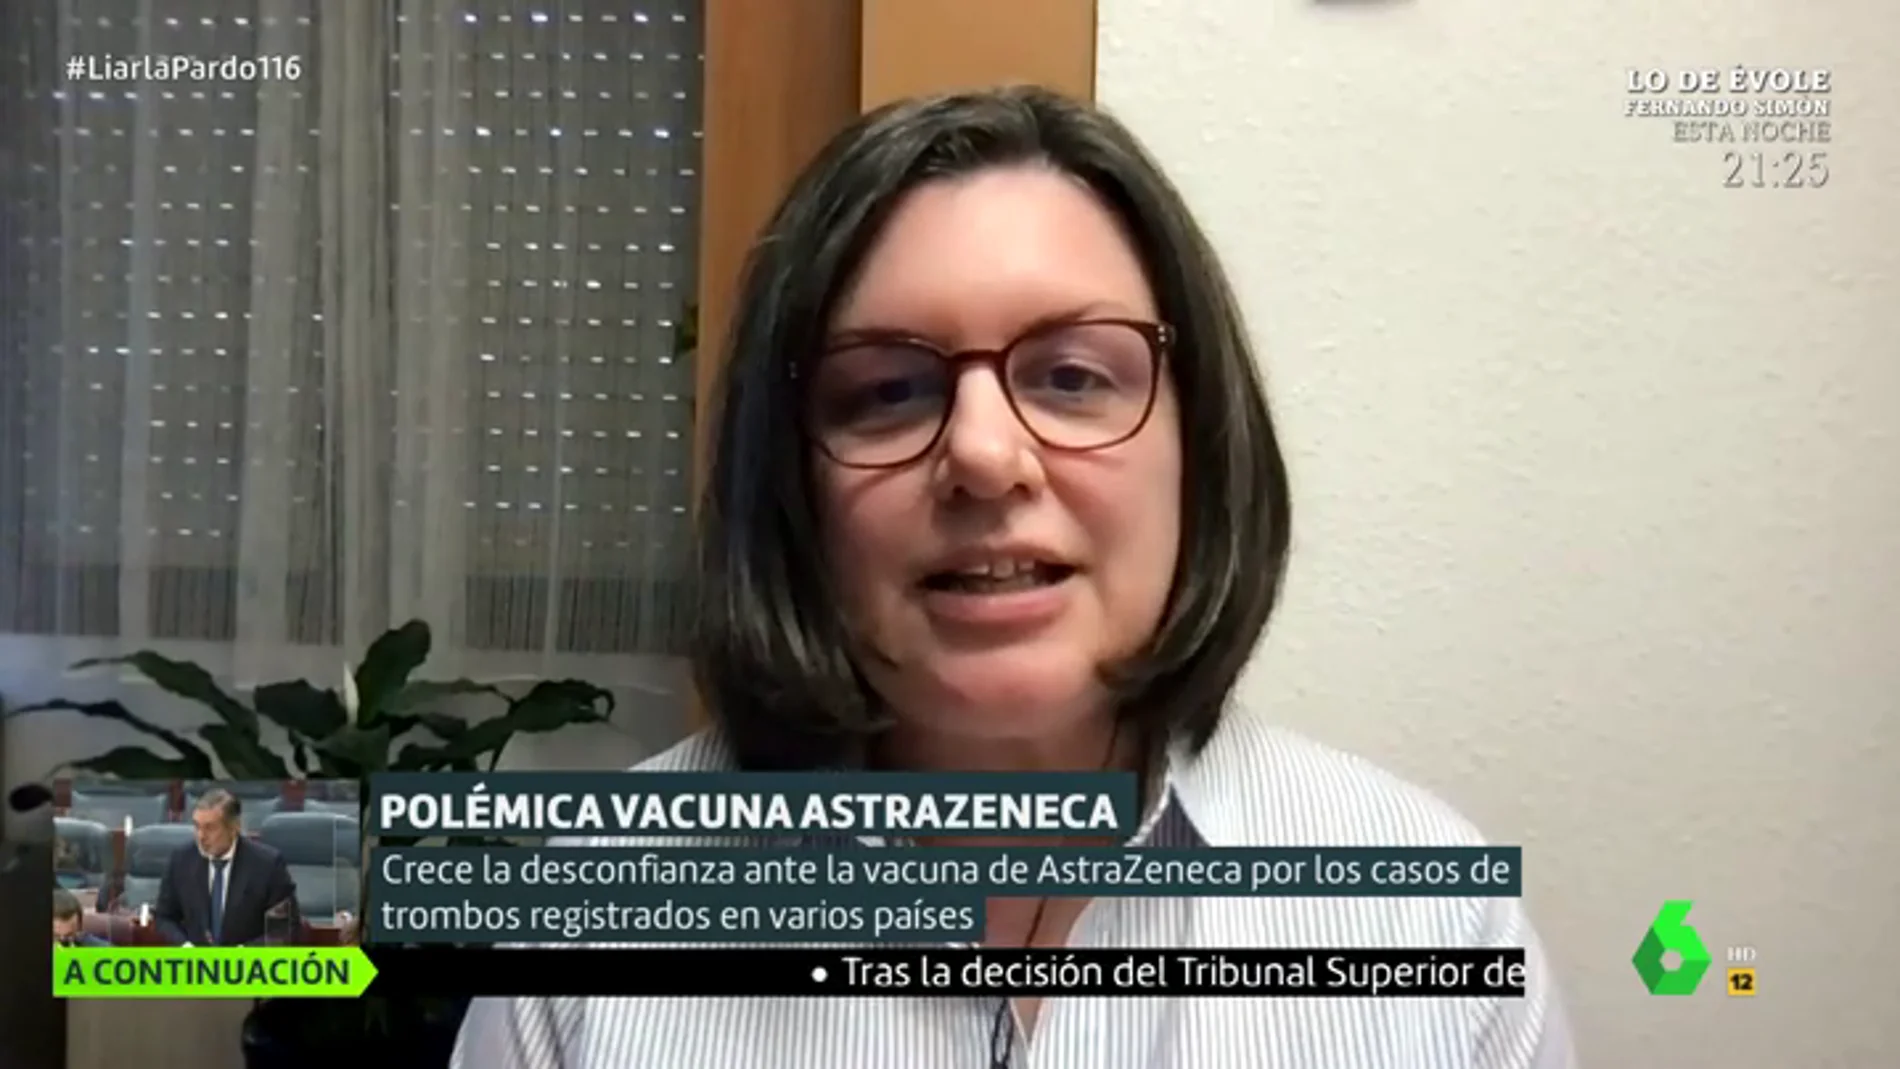 La viróloga Sonia Zúñiga llama a la calma con la vacuna de AstraZeneca: "Cualquier cosa que le pasa se magnifica"